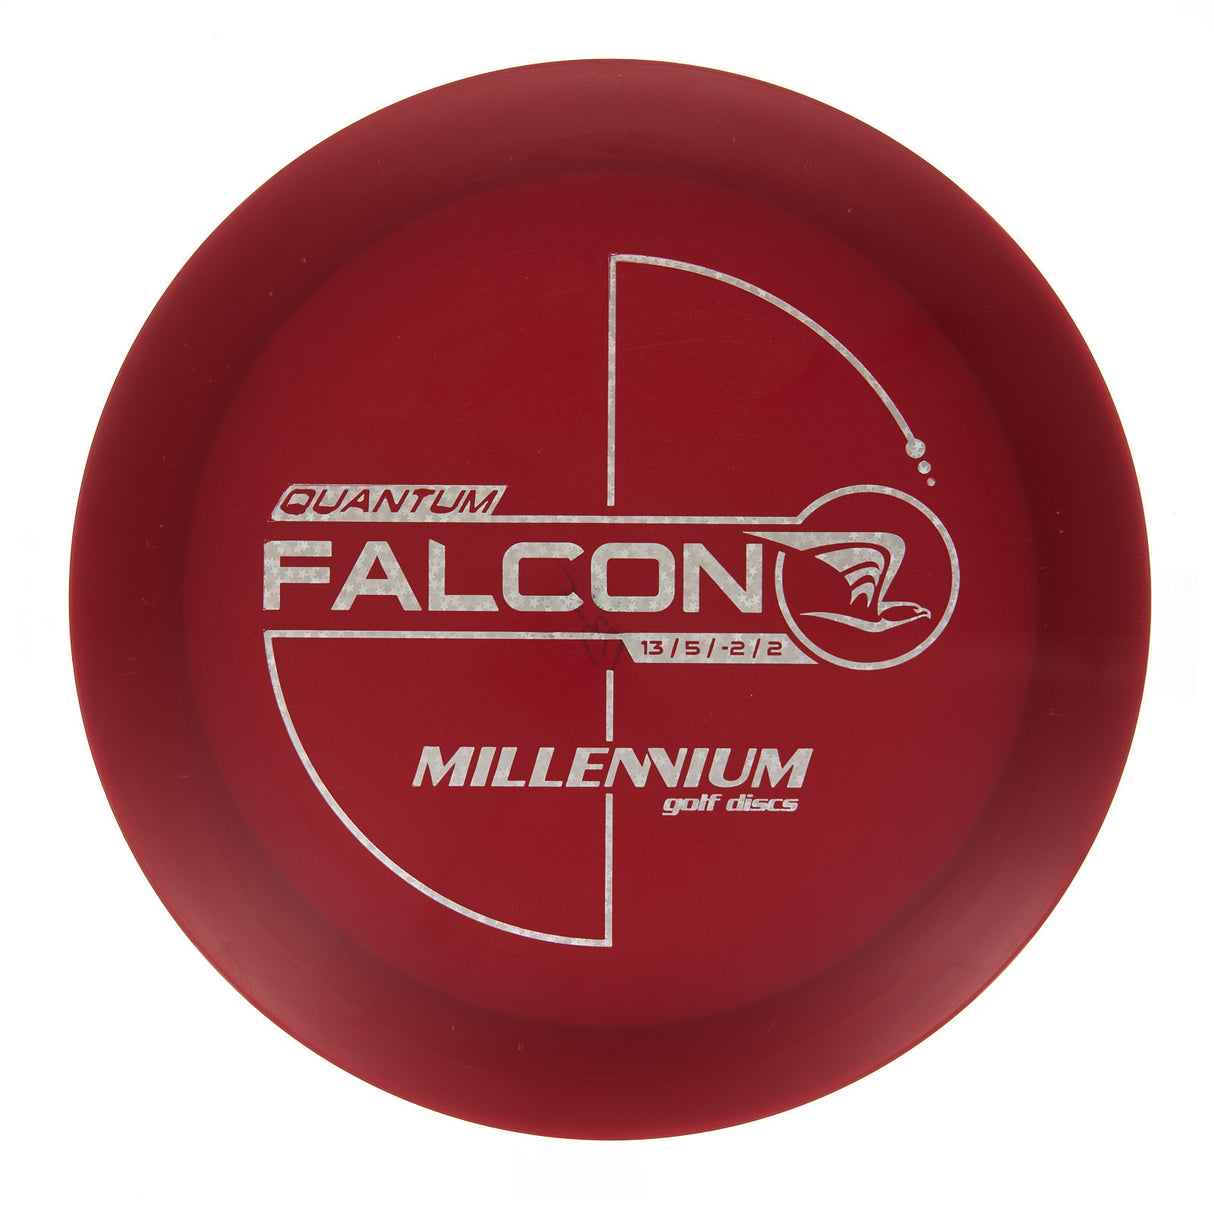 Millennium Falcon - Quantum 176g | Style 0002